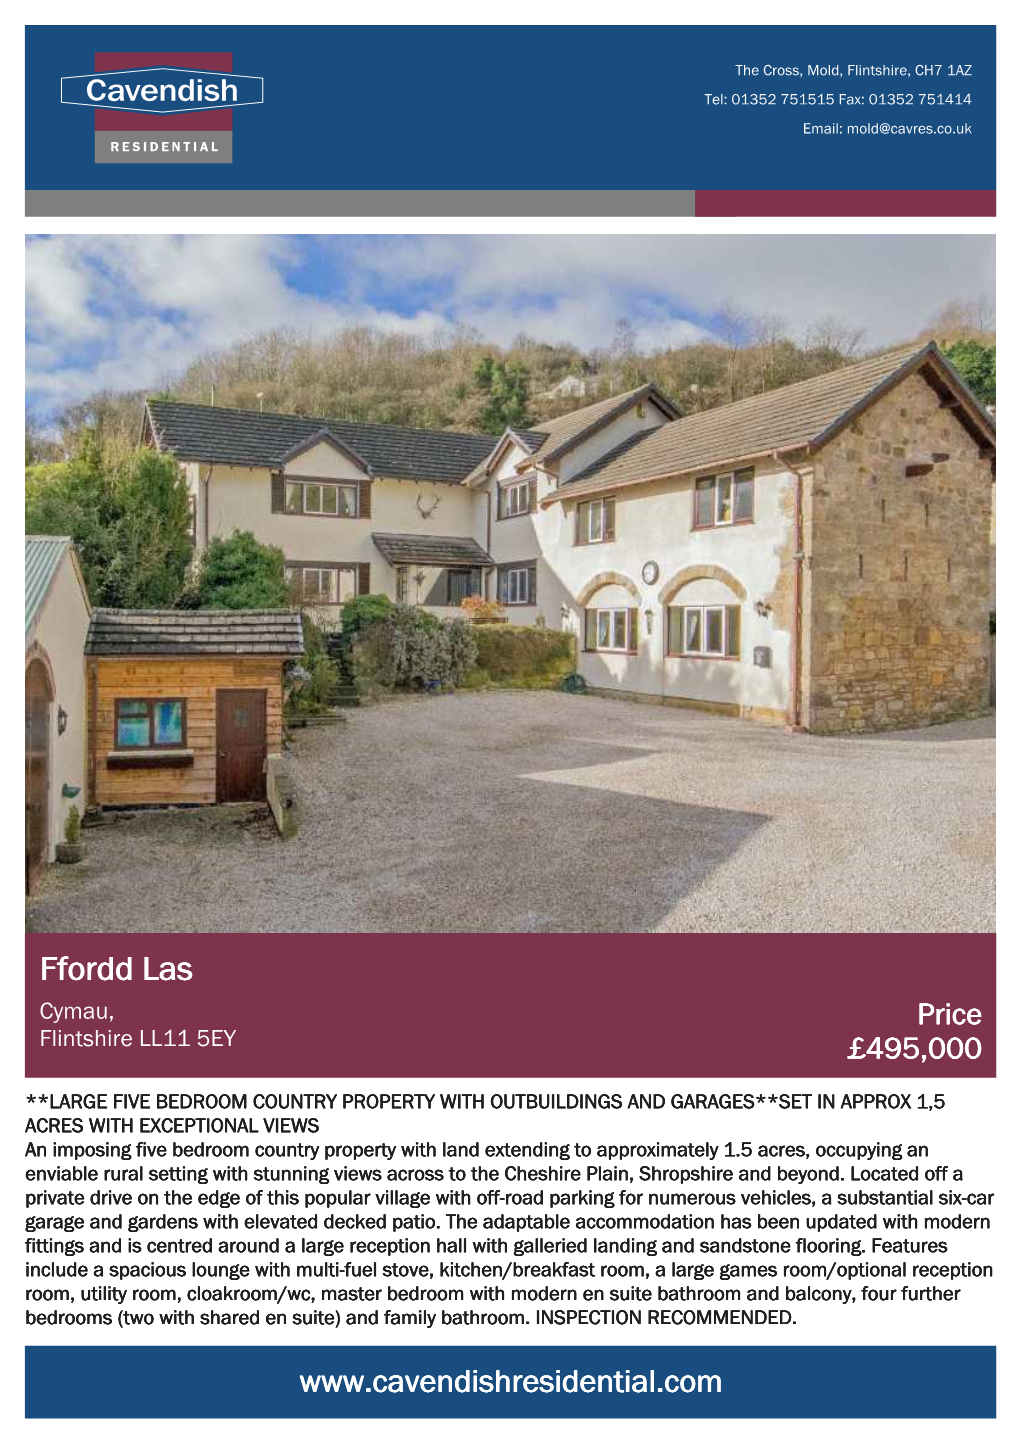 Ffordd Las Cymau, Price Flintshire LL11 5EY £495,000